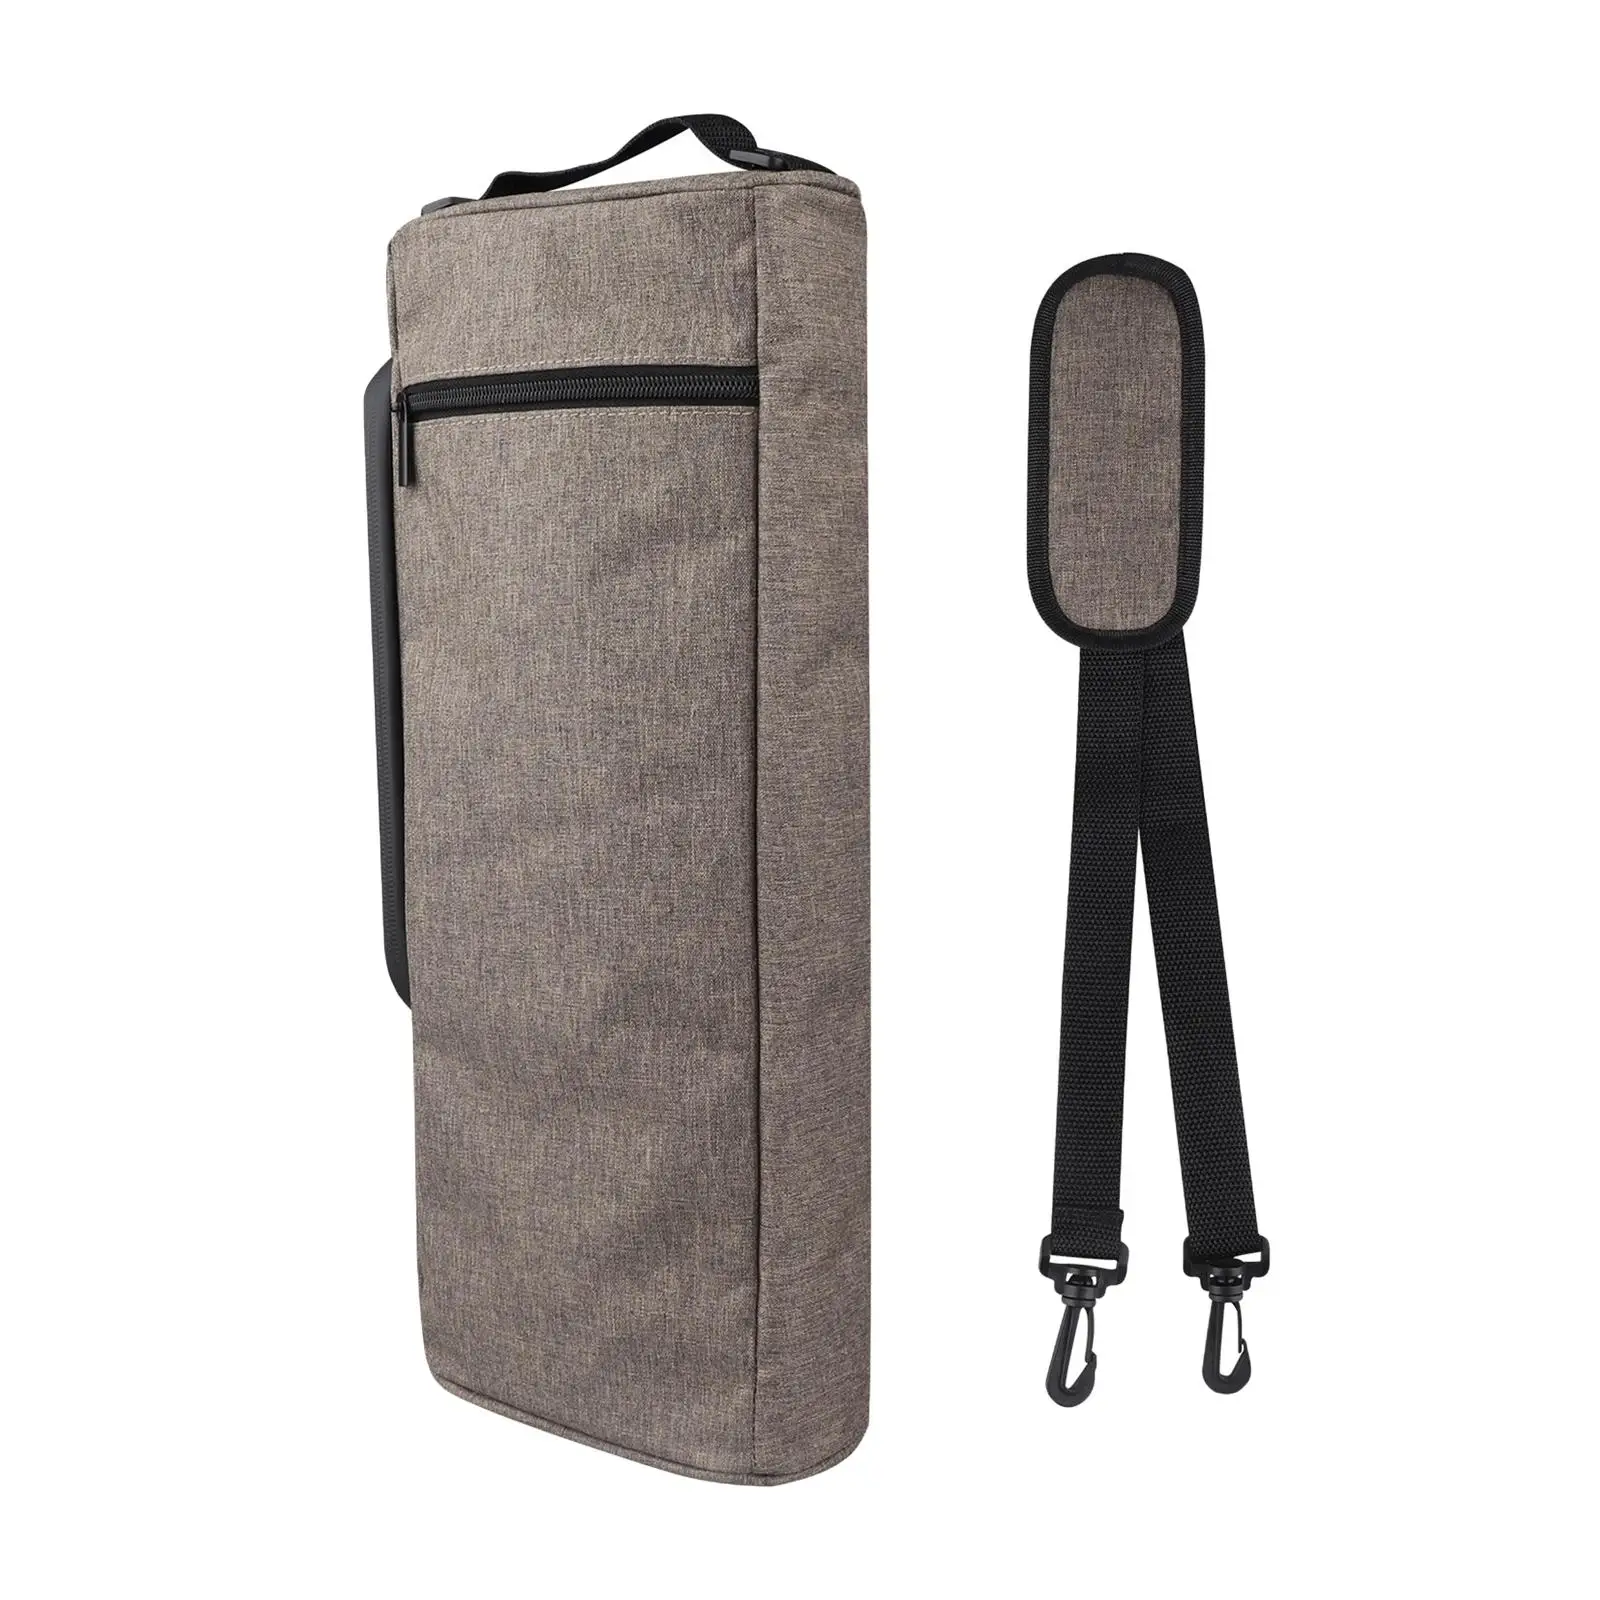 Golf Cooler Bag Adjustable Shoulder Strap Water Resistant Front Zippered Pocket for Travel